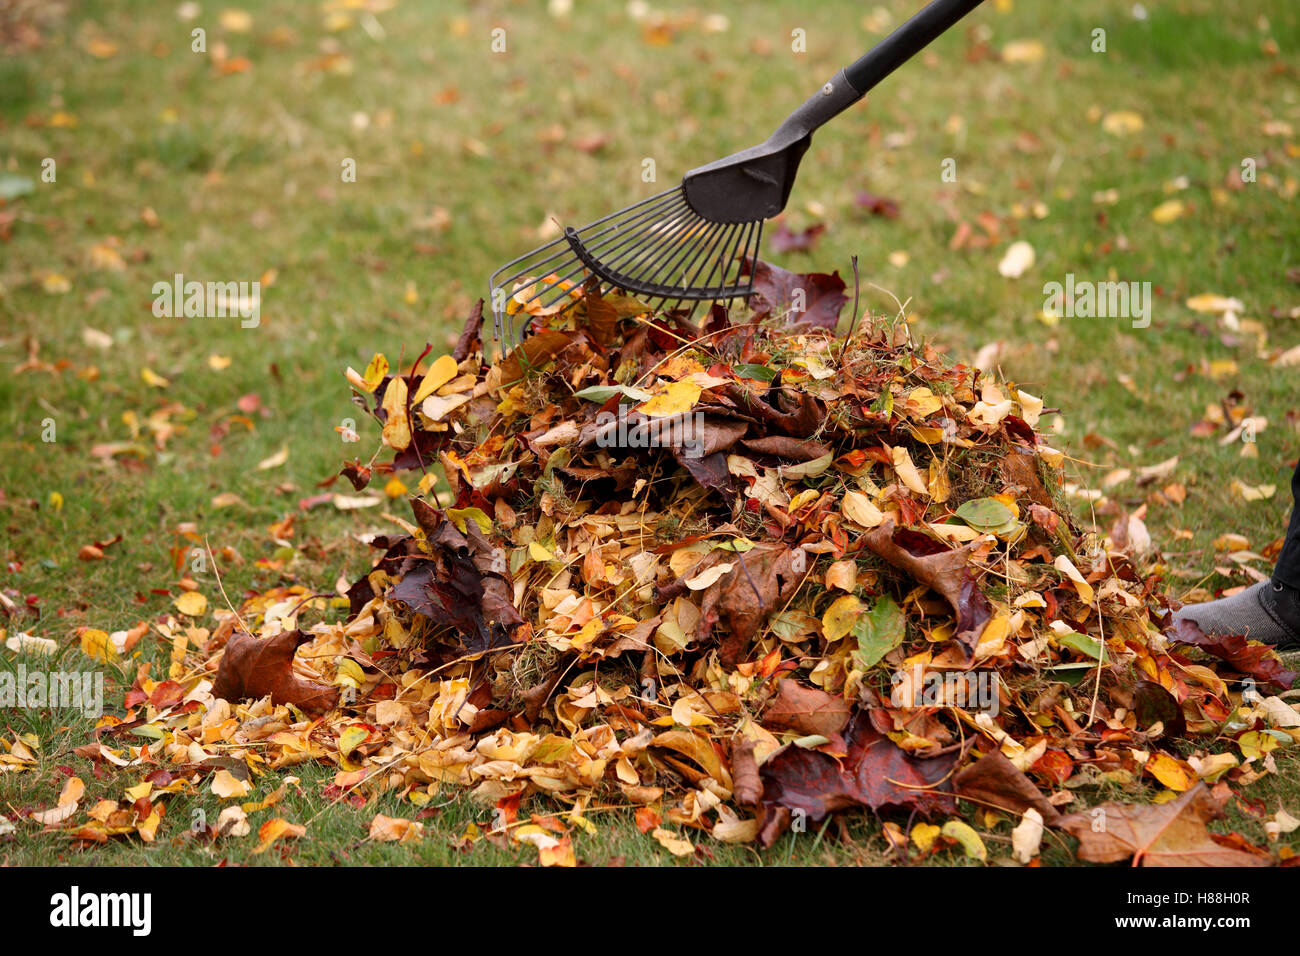 Herbstlaub in einem Haufen geharkt wird. Bild zeigt leichte Bewegung der Rake und einige Blätter Stockfoto